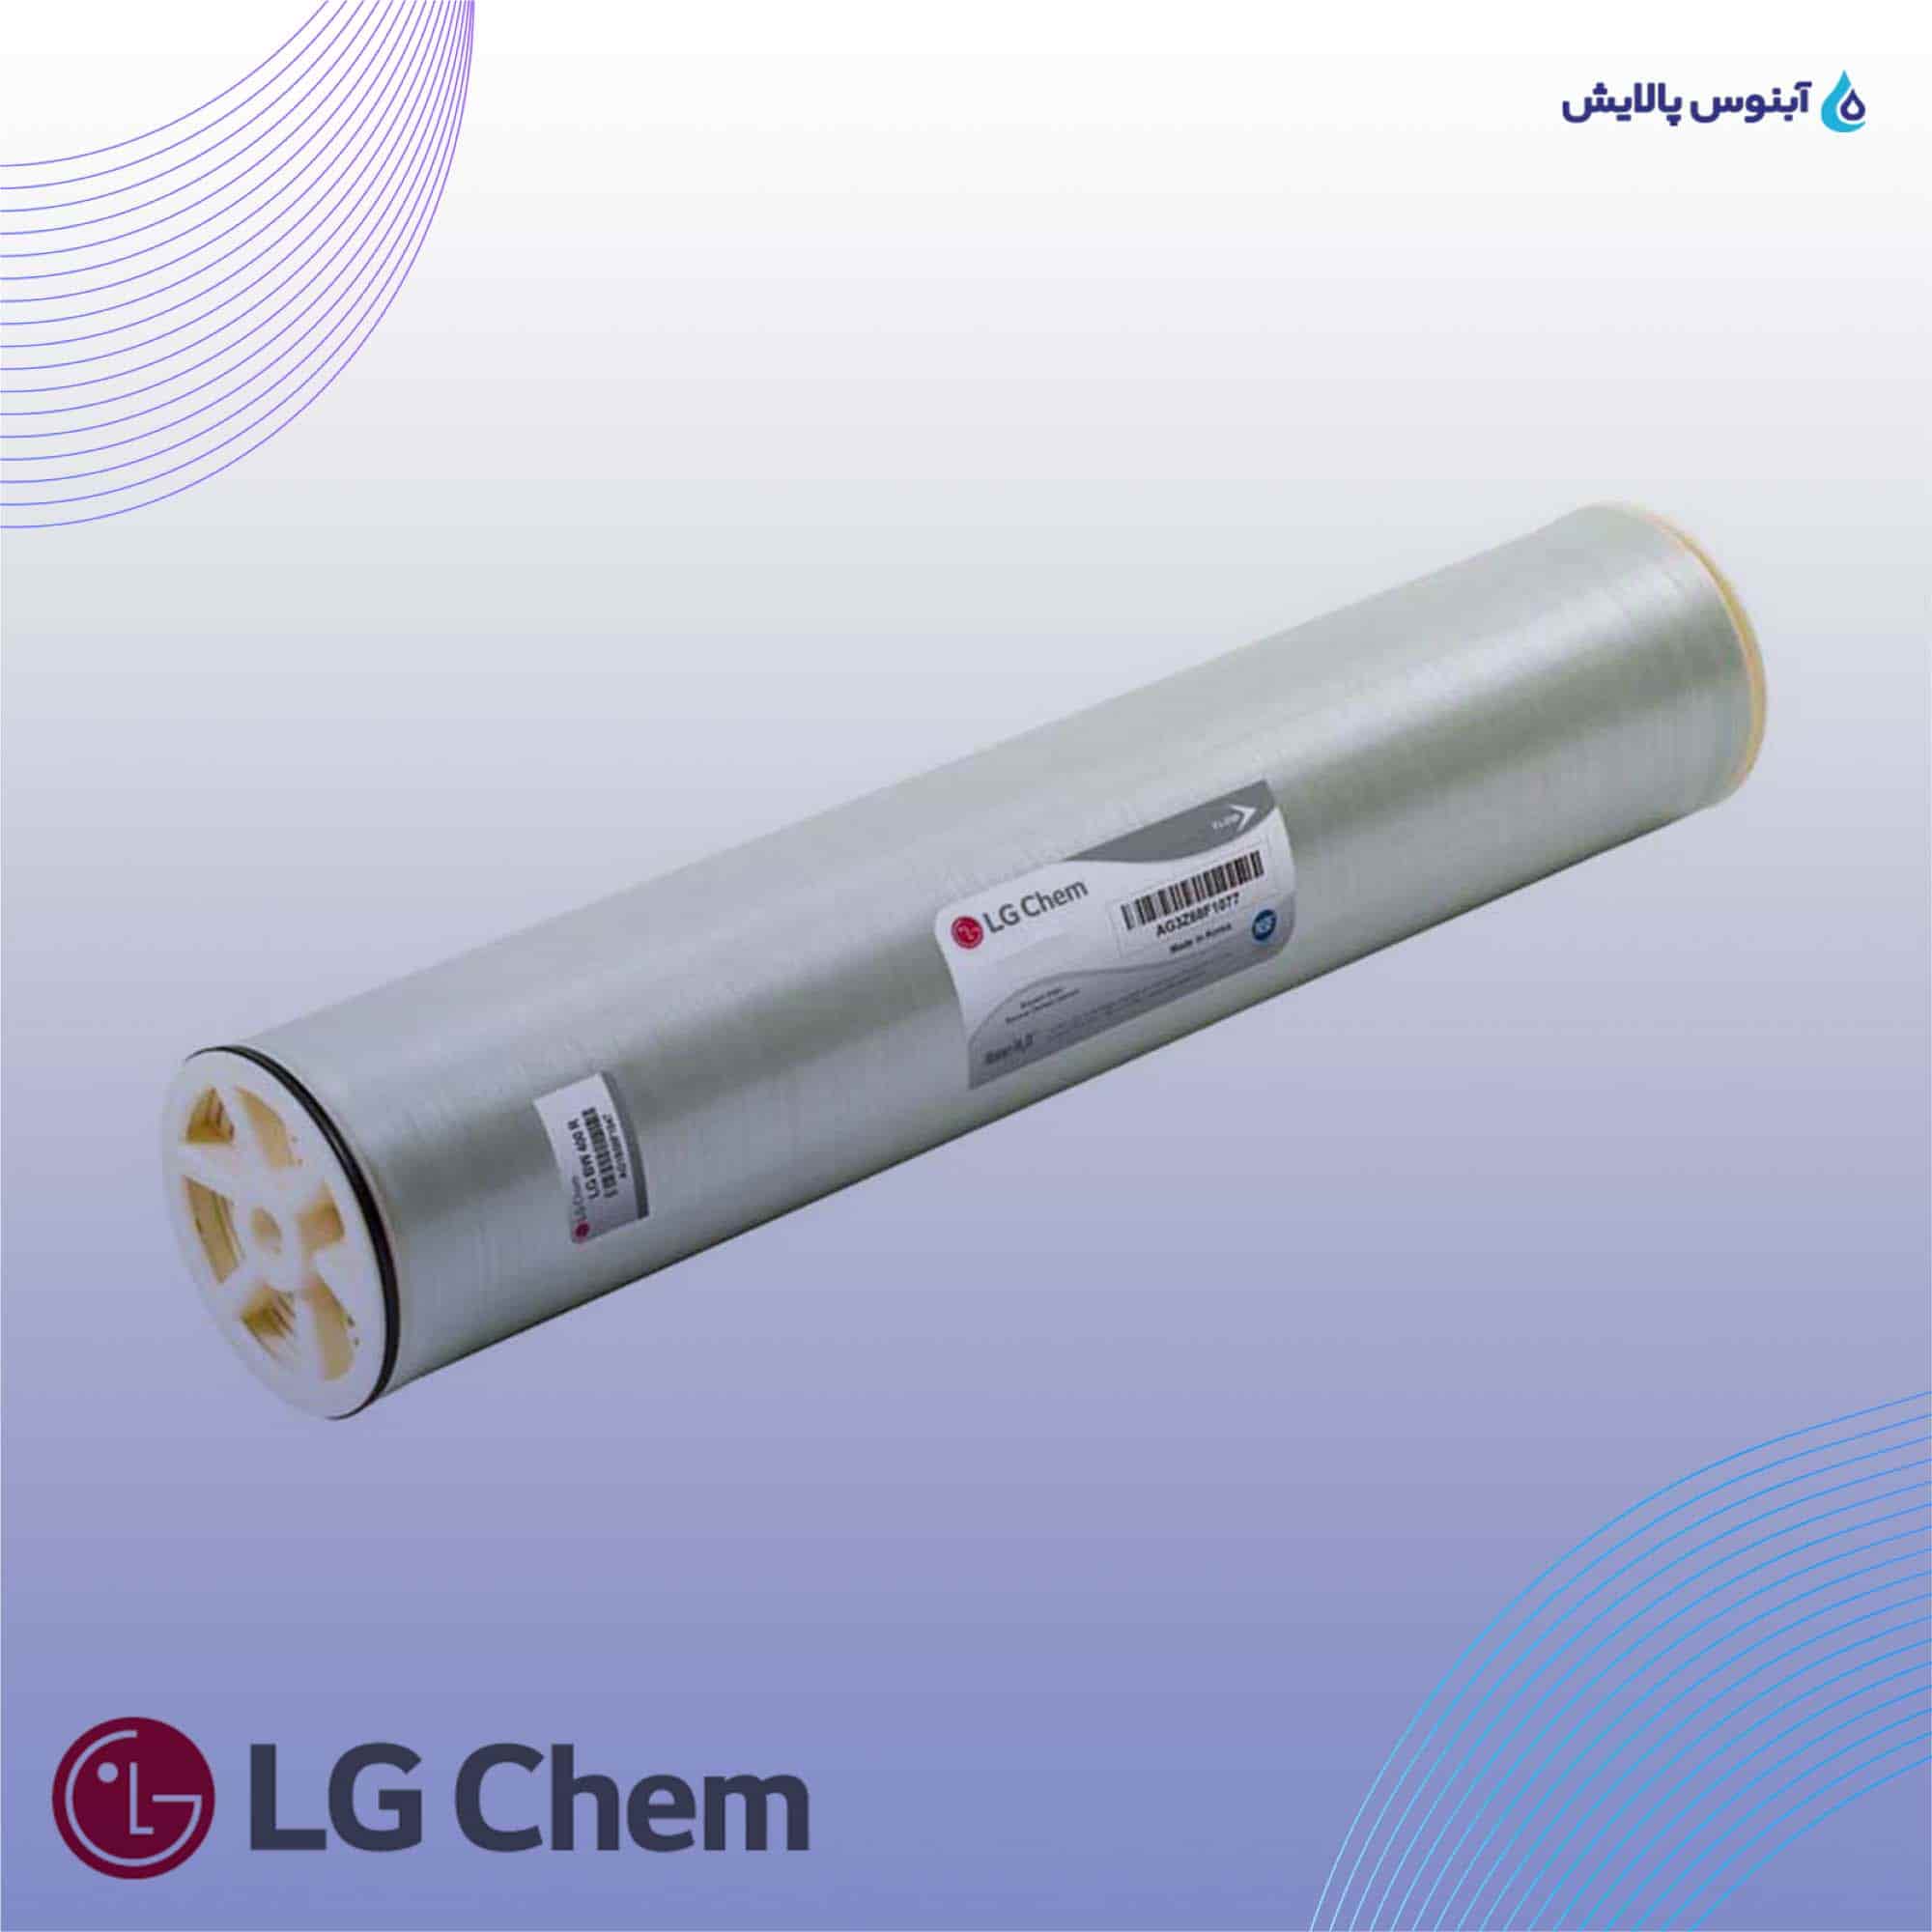 ممبران دریایی 8 اینچ ال جی کم (LG Chem) مدل LG SW 440 R